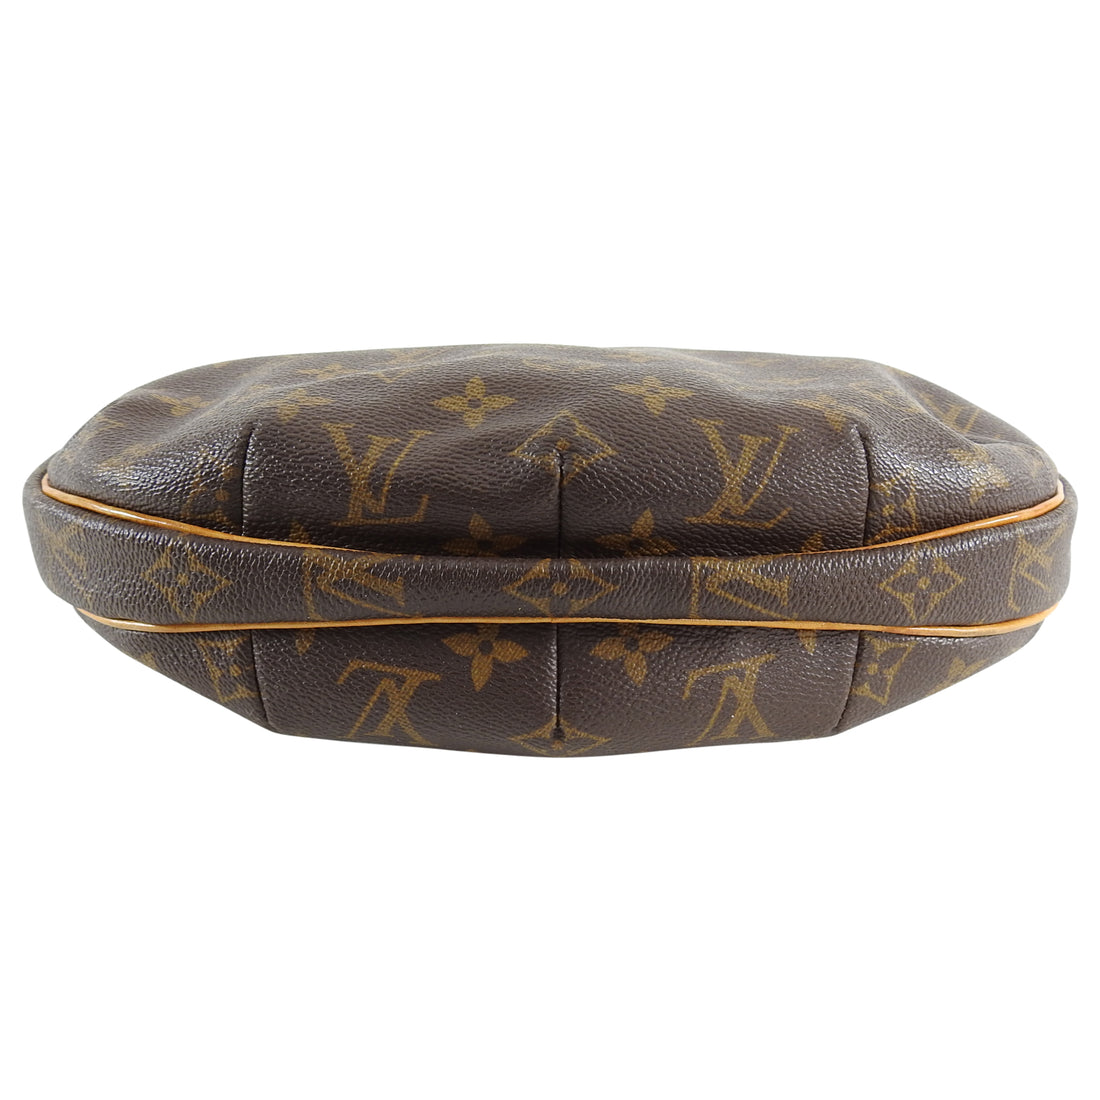 Louis Vuitton shoulder bag croissant MM M51512 monogram campus